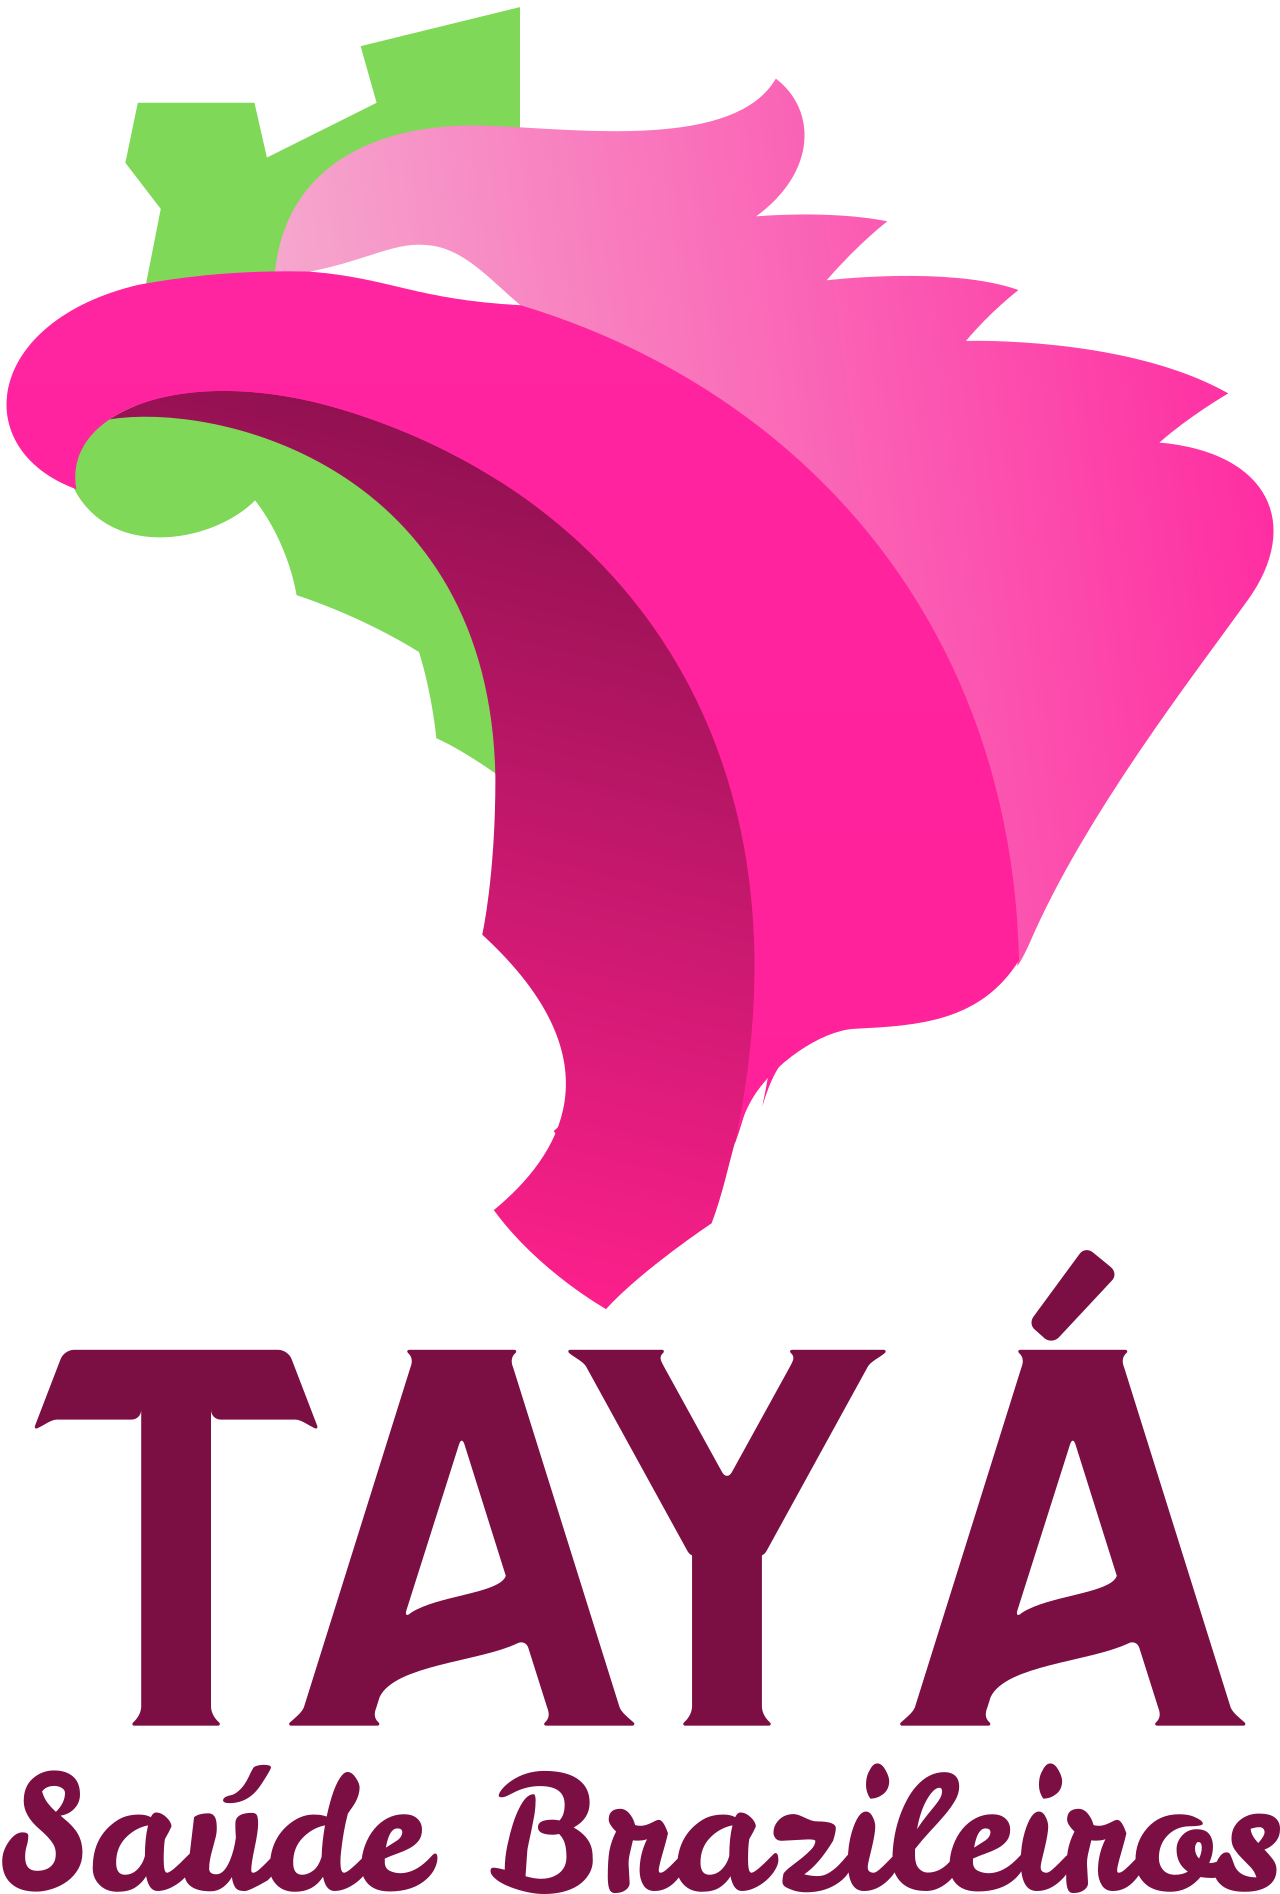 TAYÁ's web page